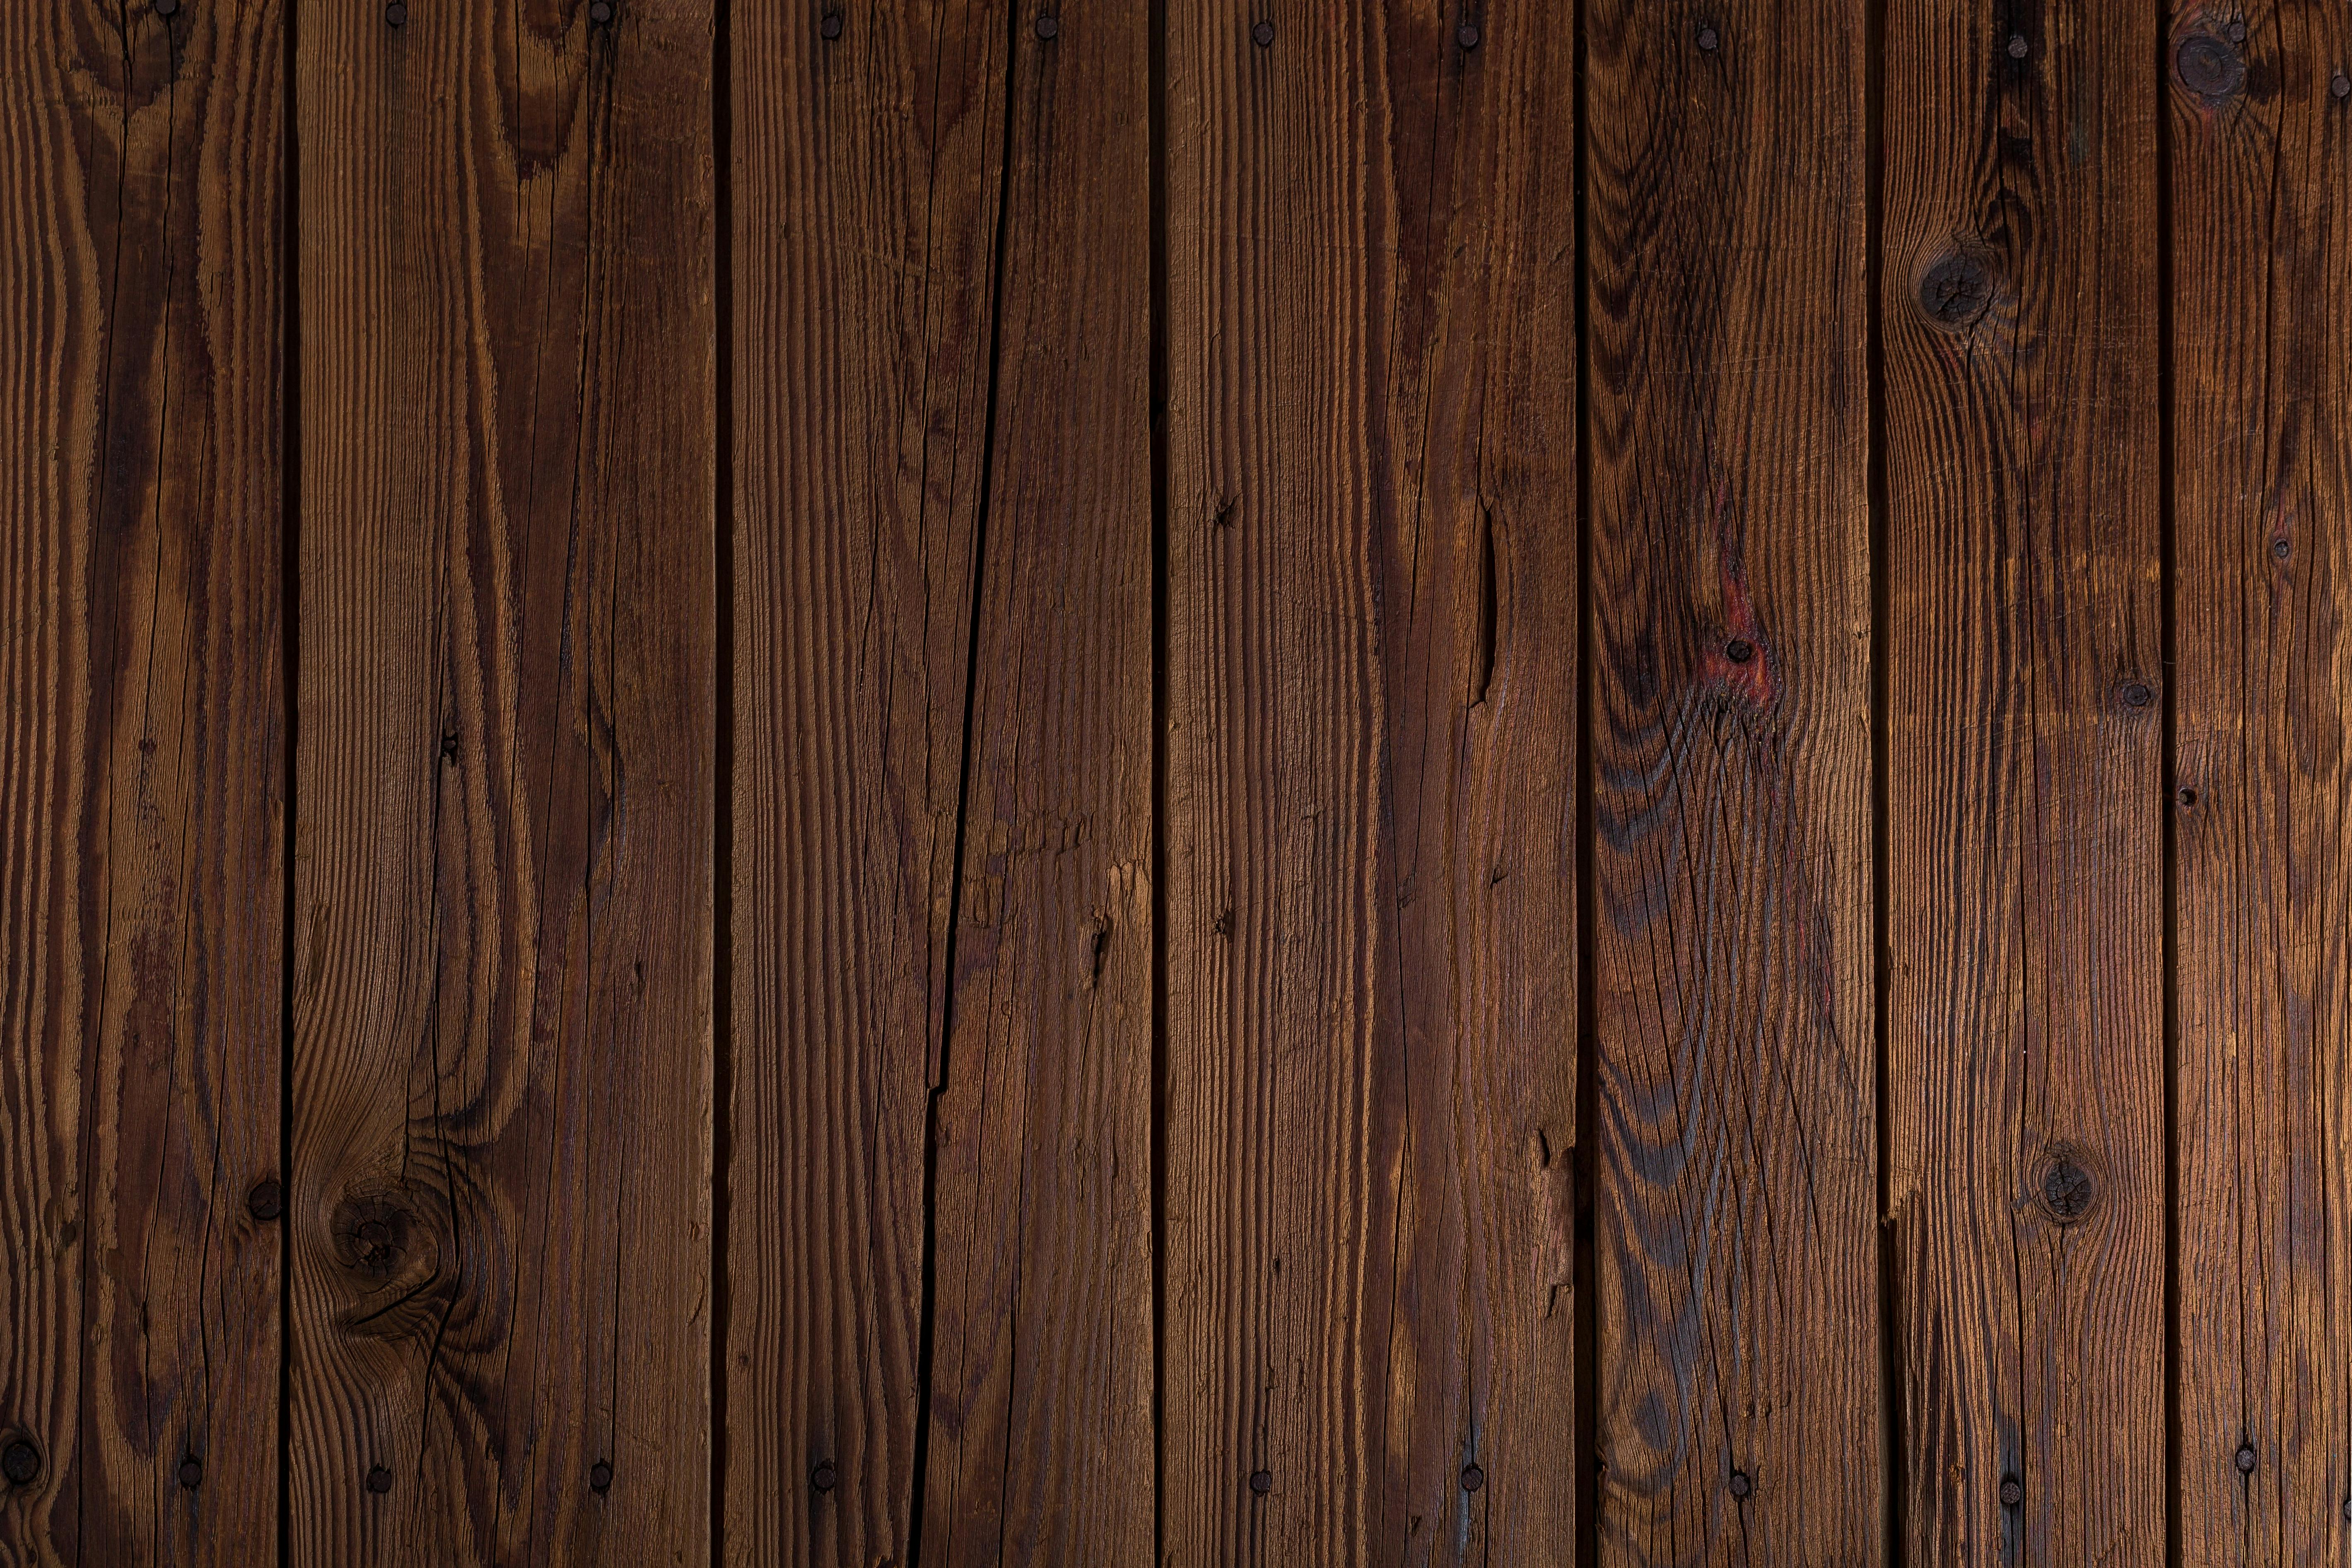 Bảng gỗ và bề mặt gỗ đã trở thành một xu hướng tuyệt vời cho thiết kế nội thất trong những năm gần đây. Với ảnh bảng gỗ và bề mặt gỗ tuyệt đẹp, bạn có thể cảm nhận được vẻ đẹp tuyệt vời của chúng không chỉ trong không gian sống mà còn trên màn hình của mình.